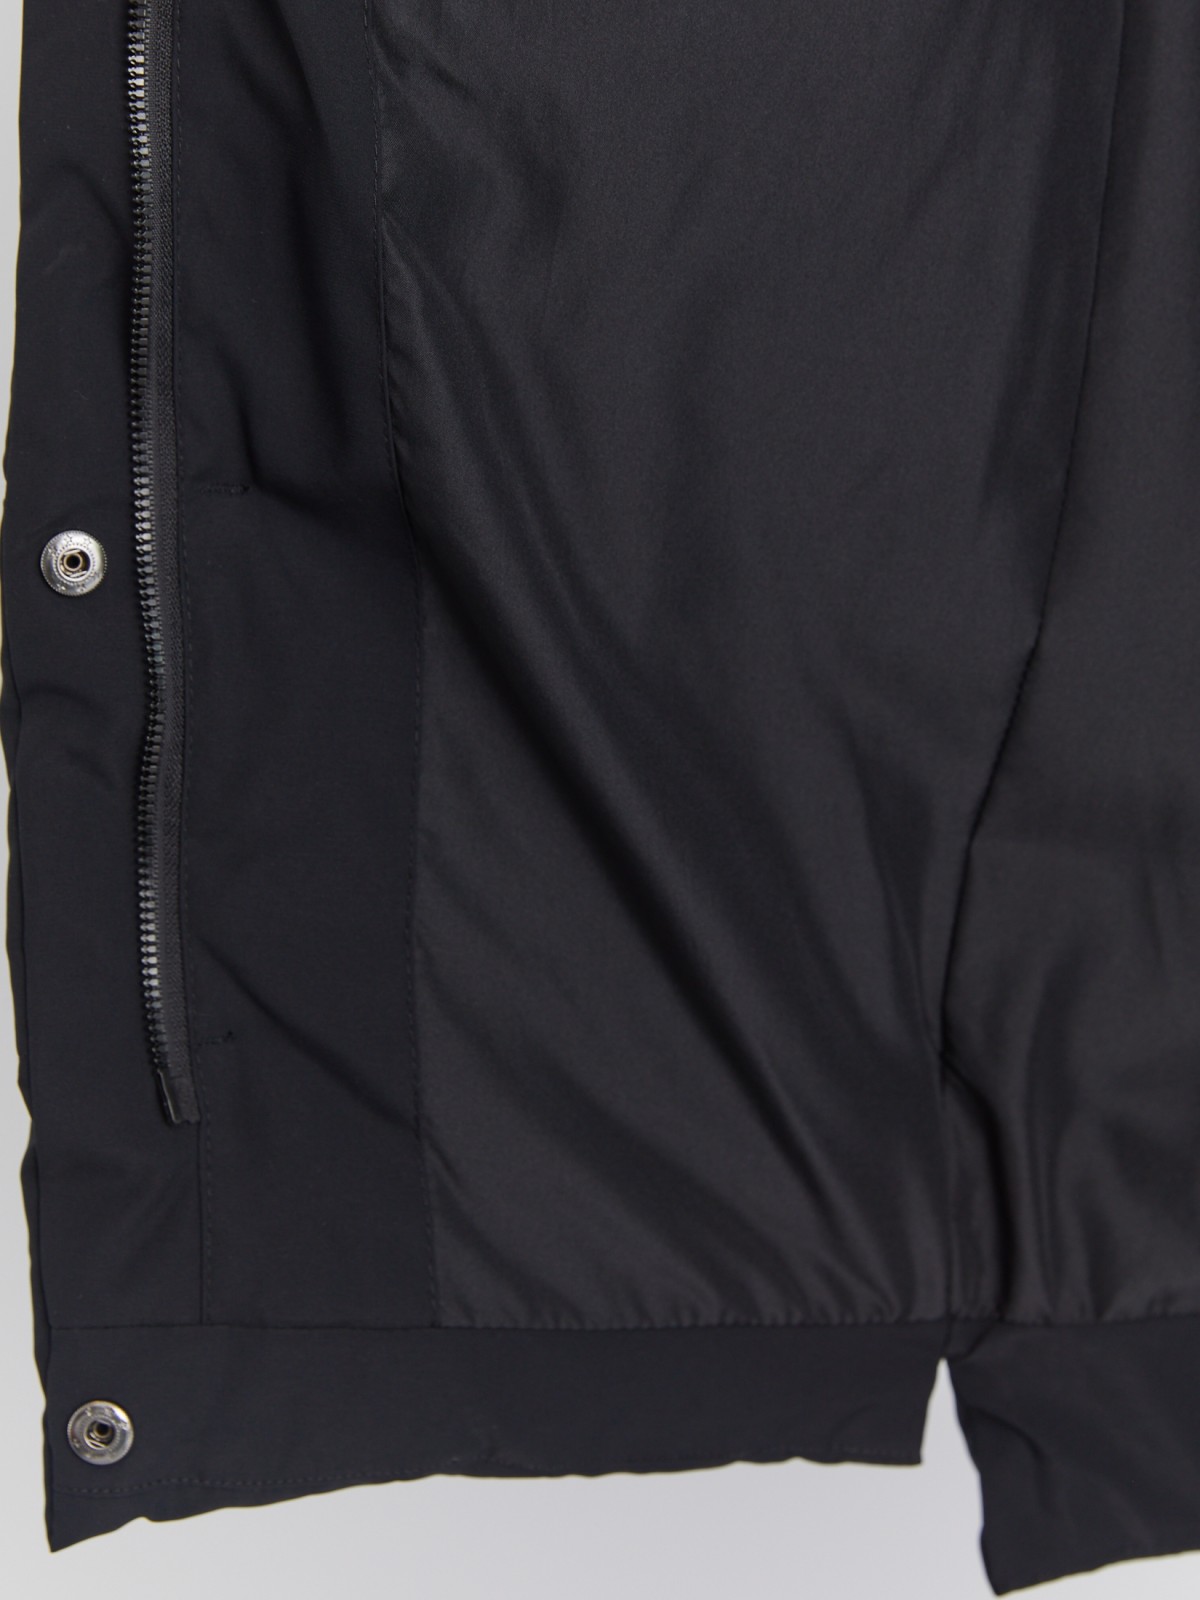 Тёплая стёганая куртка-пальто удлинённого фасона с капюшоном zolla 02334522J144, цвет черный, размер XS - фото 5